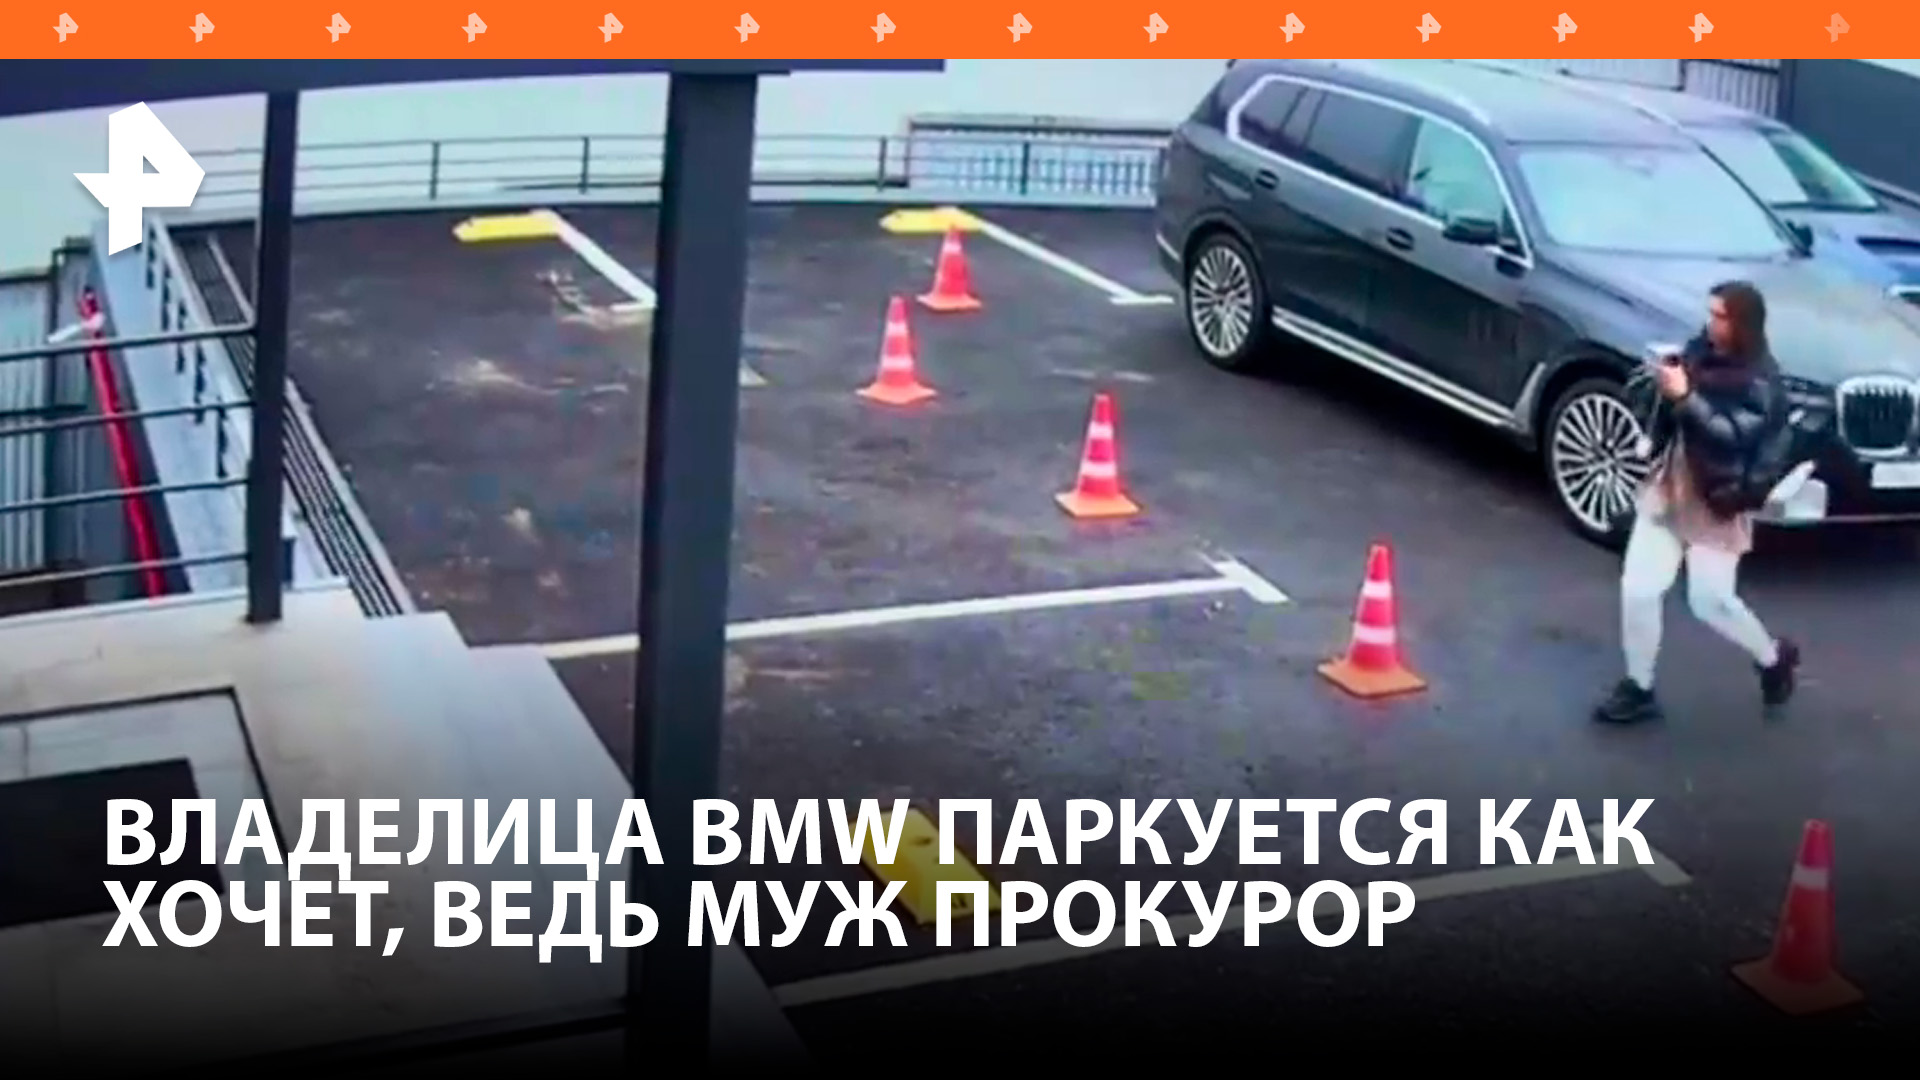 "У меня муж прокурор": владелица BMW припарковалась посреди двора, а в ответ на замечания угрожала